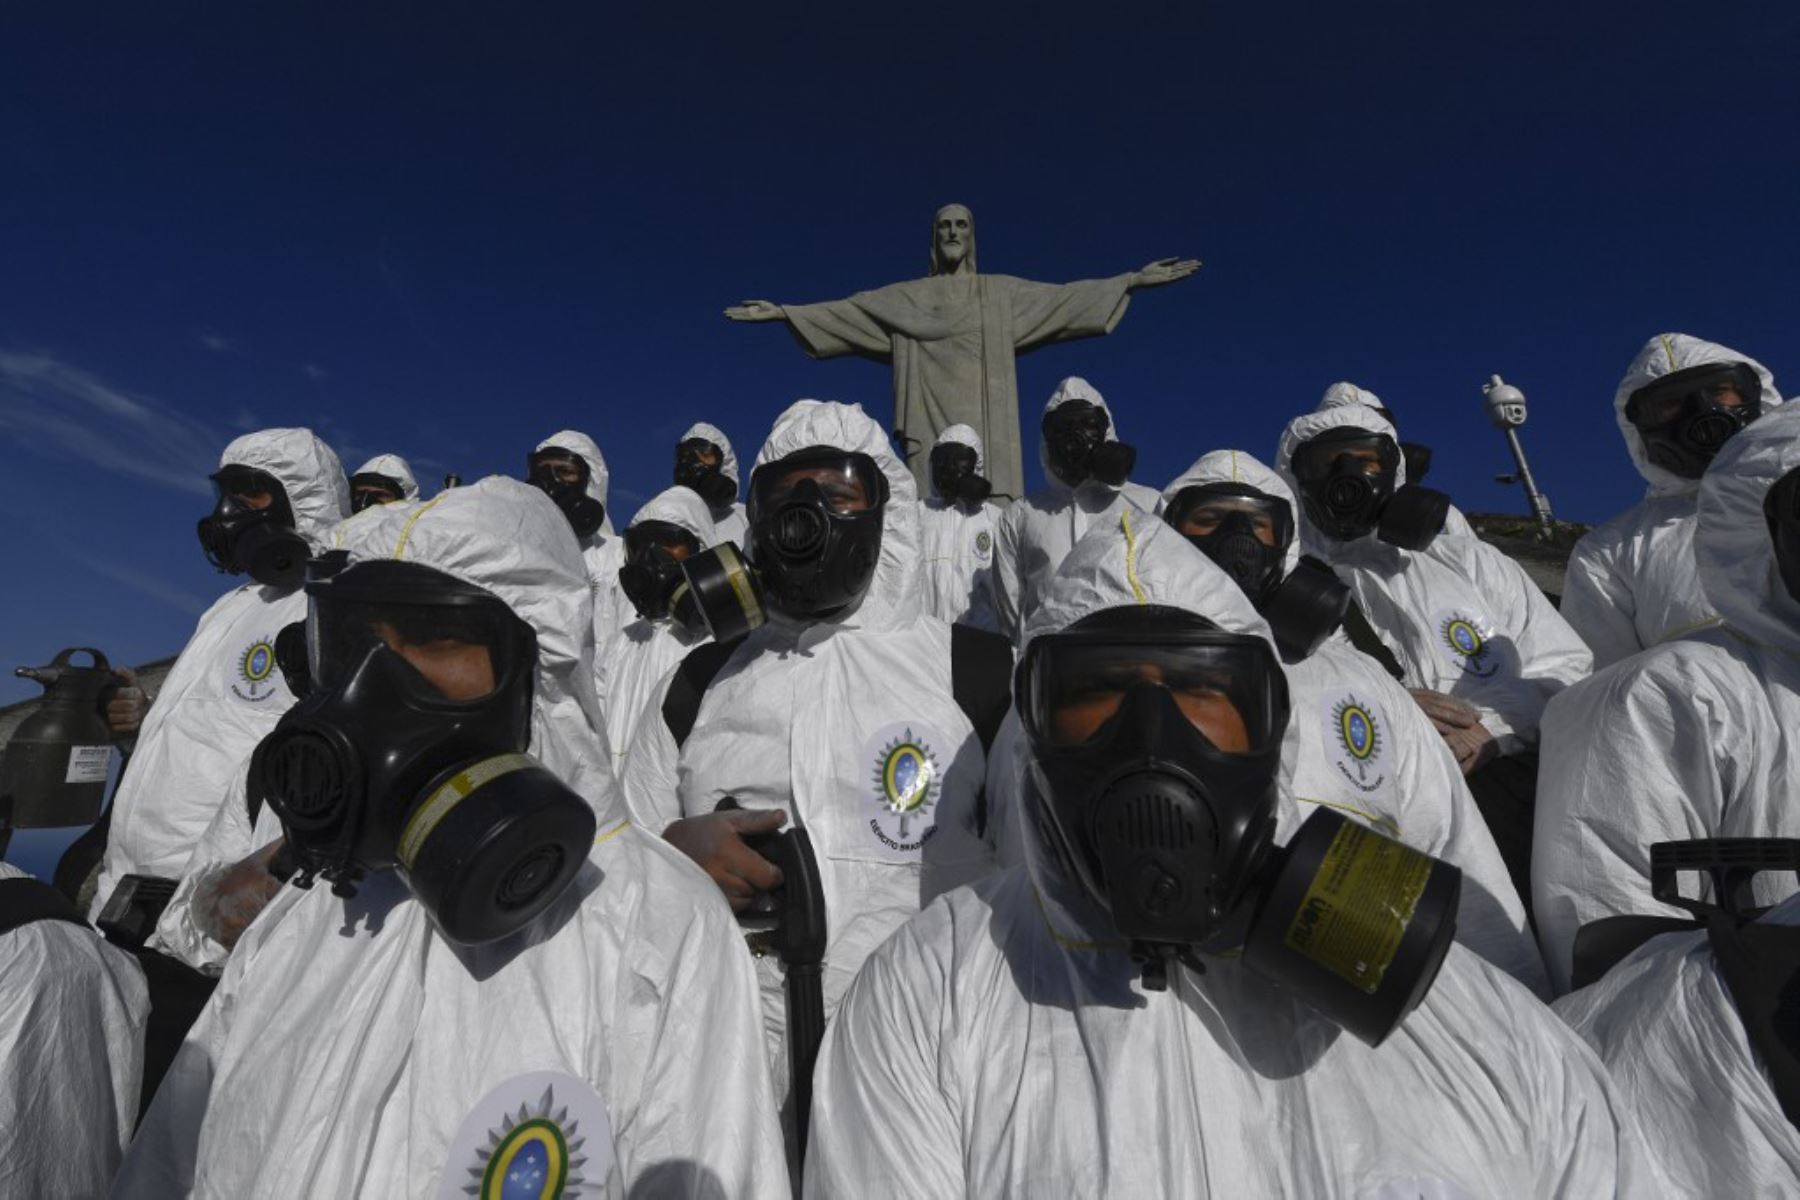 Soldados de las Fuerzas Armadas de Brasil durante los procedimientos de desinfección de la estatua del Cristo Redentor en la montaña Corcovado, en Río de Janeiro, Brasil, en medio de la pandemia por coronavirus.

Foto: AFP